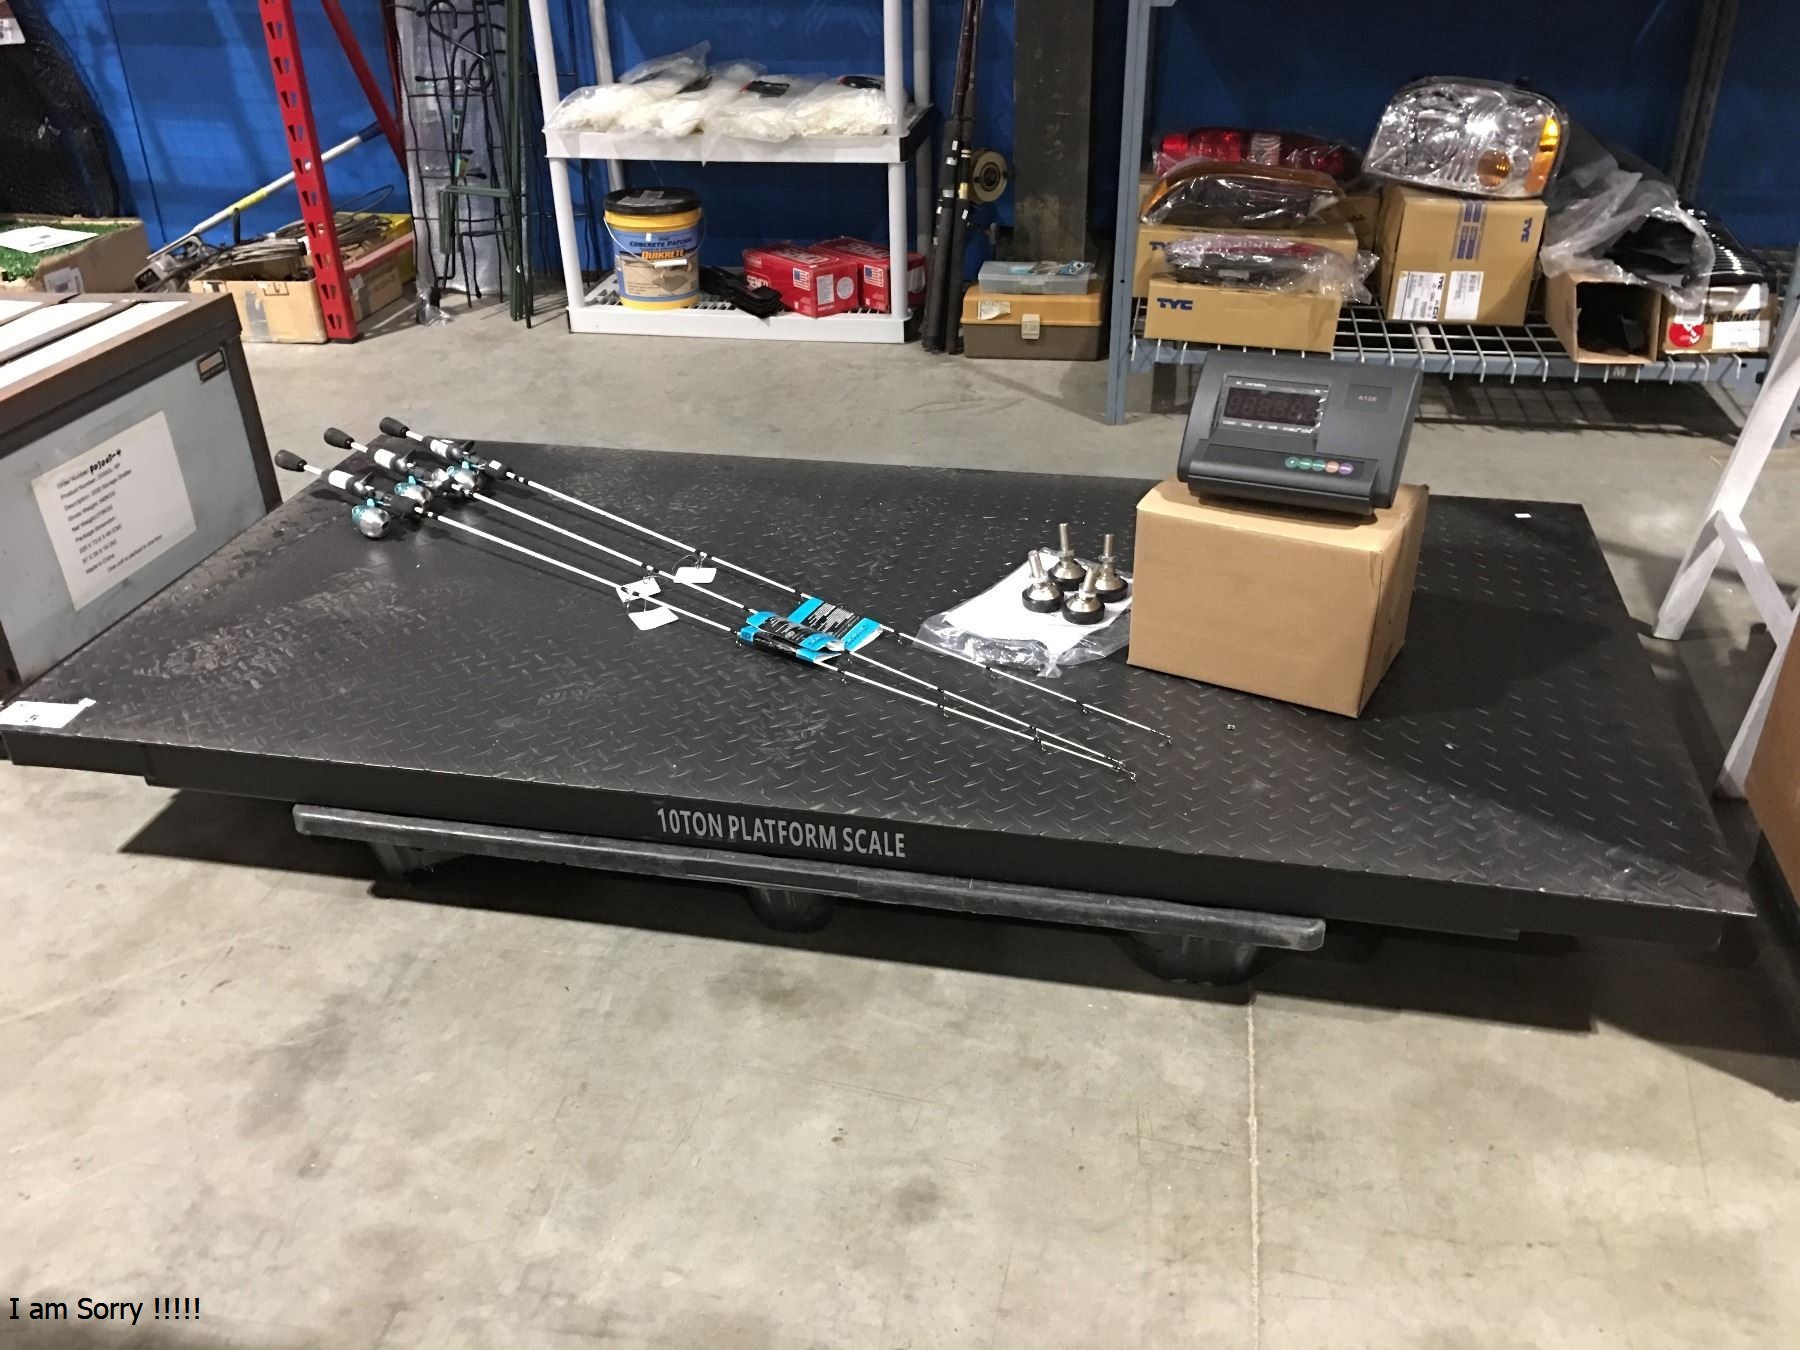 Industry platform floor weighing scales